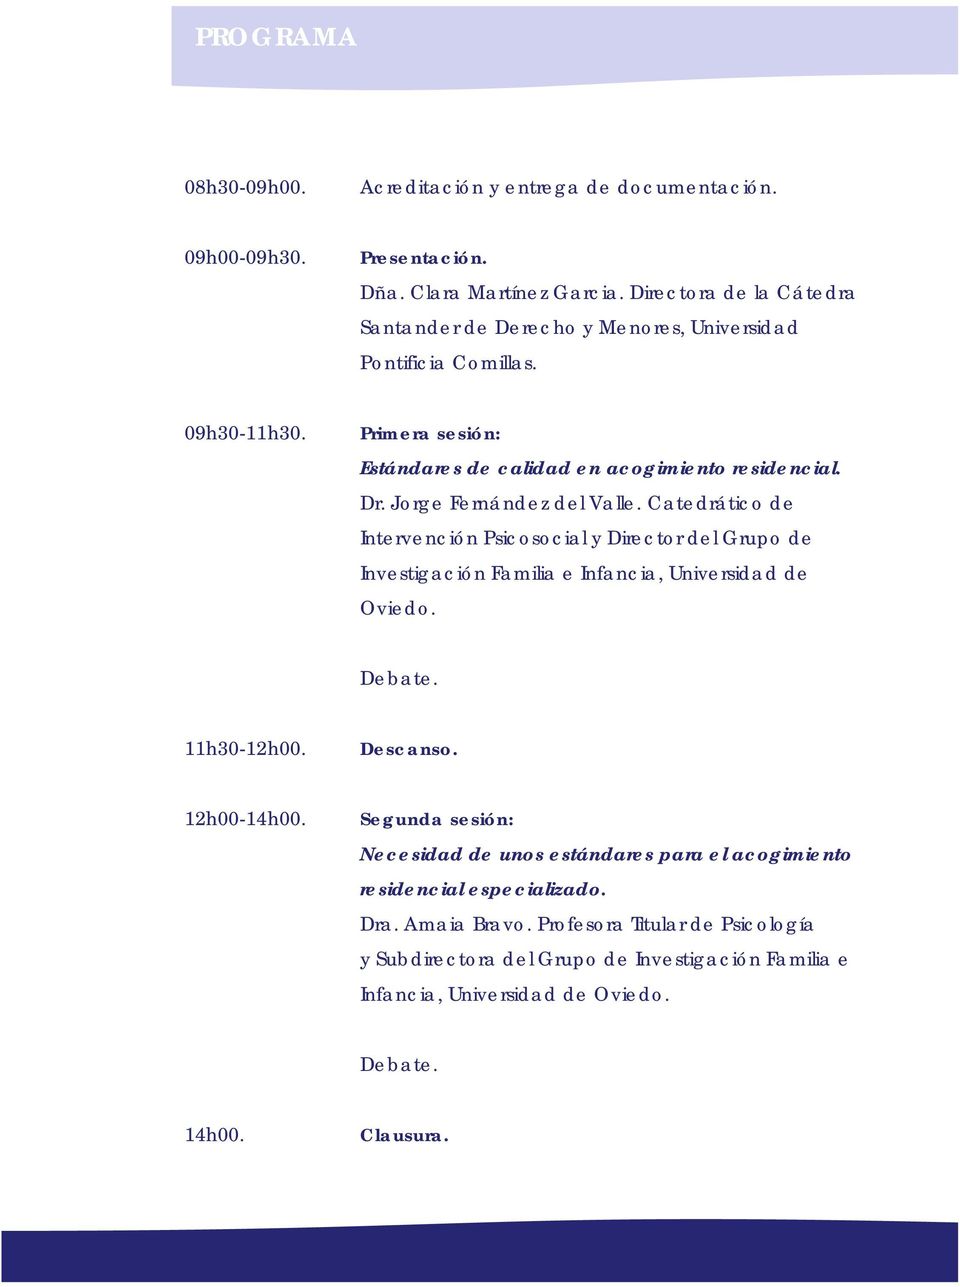 Jorge Fernández del Valle. Catedrático de Intervención Psicosocial y Director del Grupo de Investigación Familia e Infancia, Universidad de Oviedo. Debate. 11h30-12h00. Descanso.